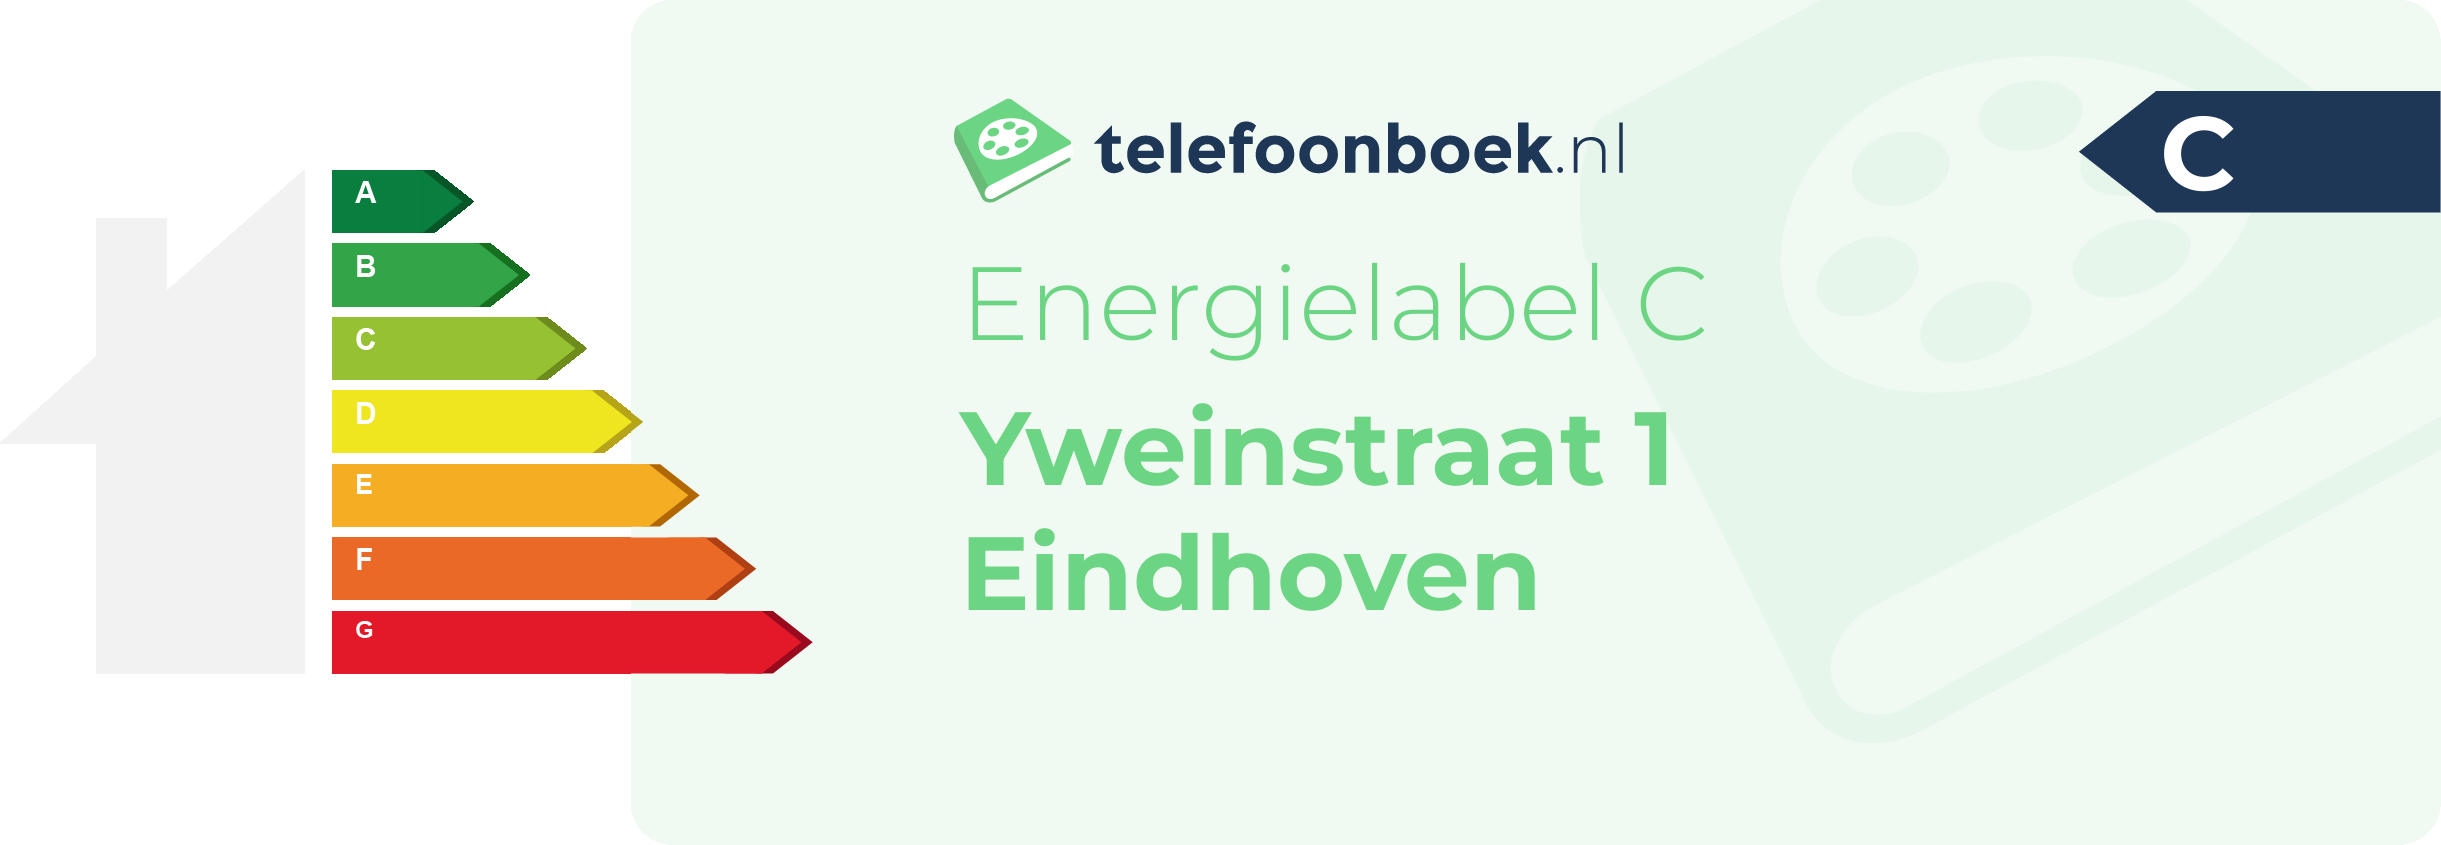 Energielabel Yweinstraat 1 Eindhoven